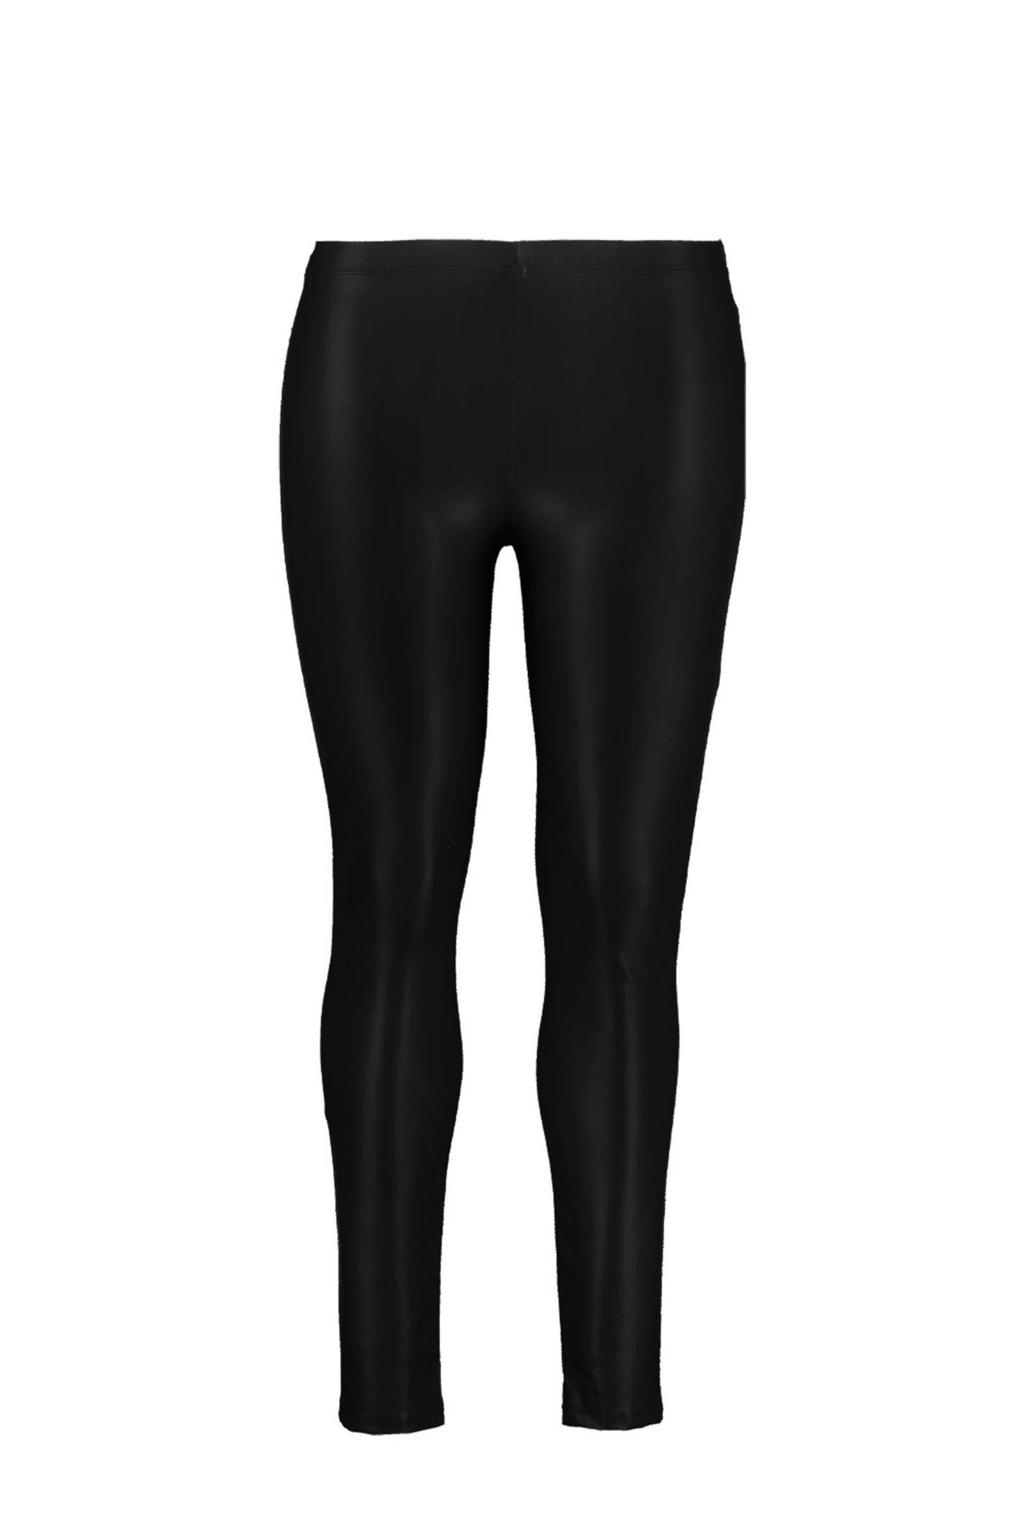 Zwarte dames MS Mode imitatieleren legging van polyester met skinny fit, regular waist en elastische tailleband